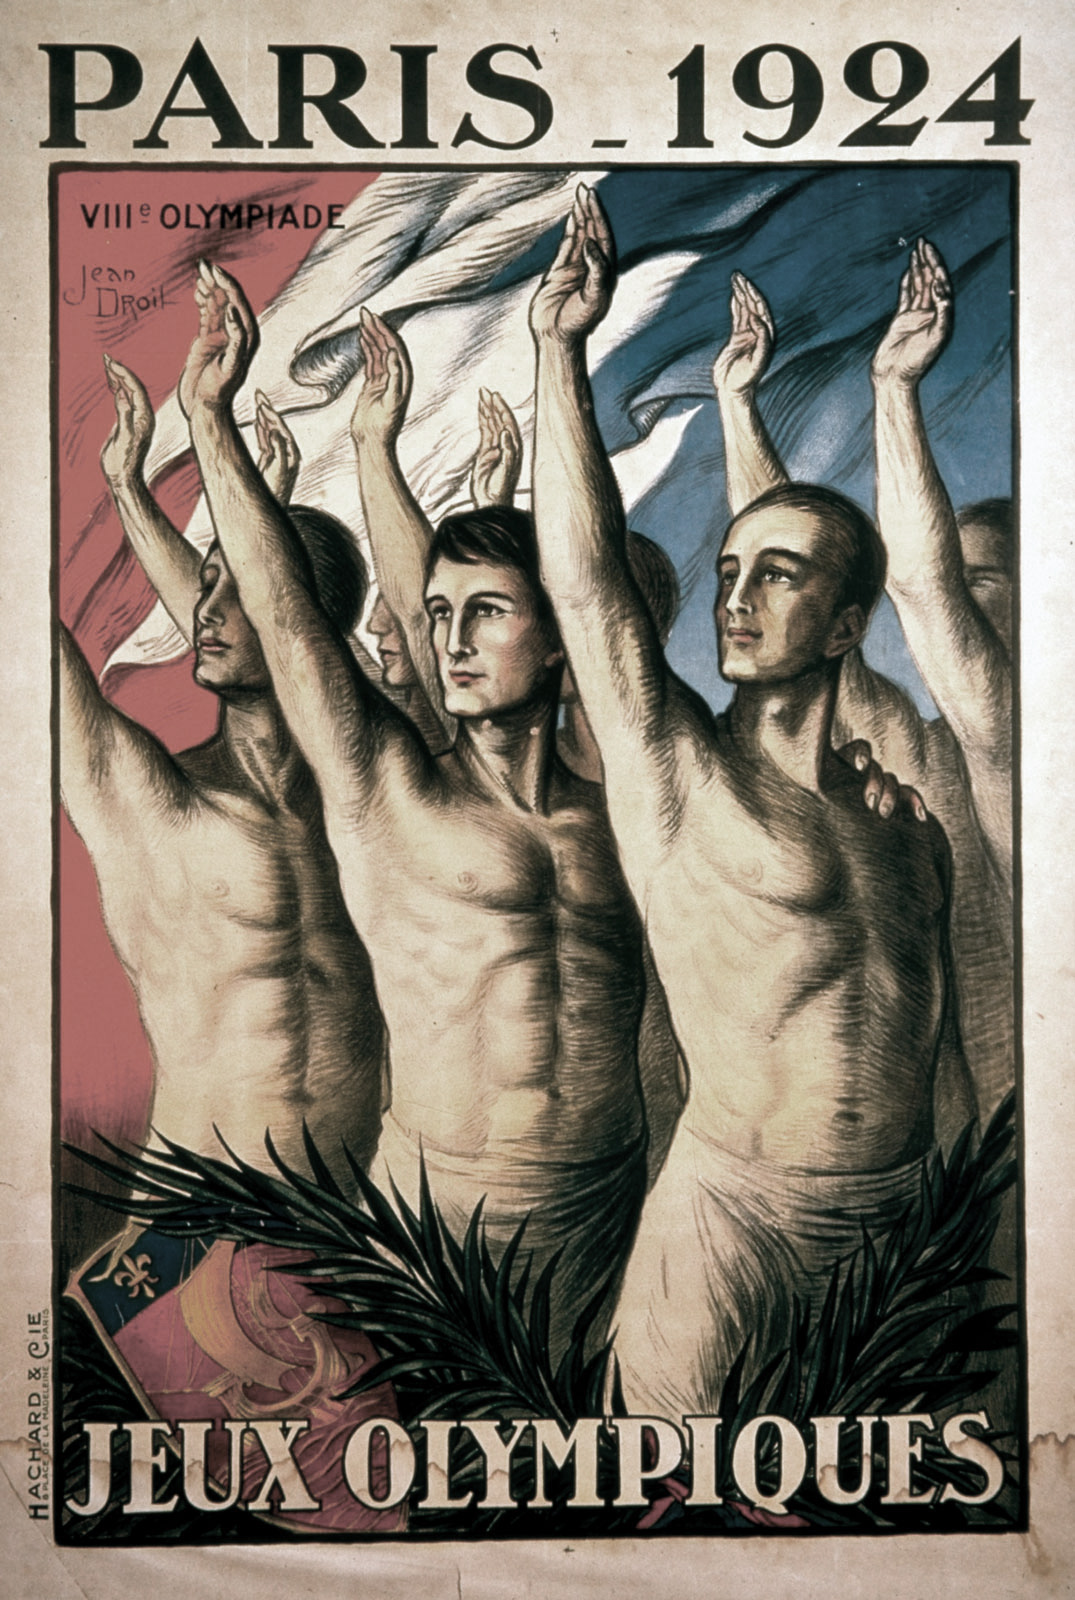 1924 - Paris